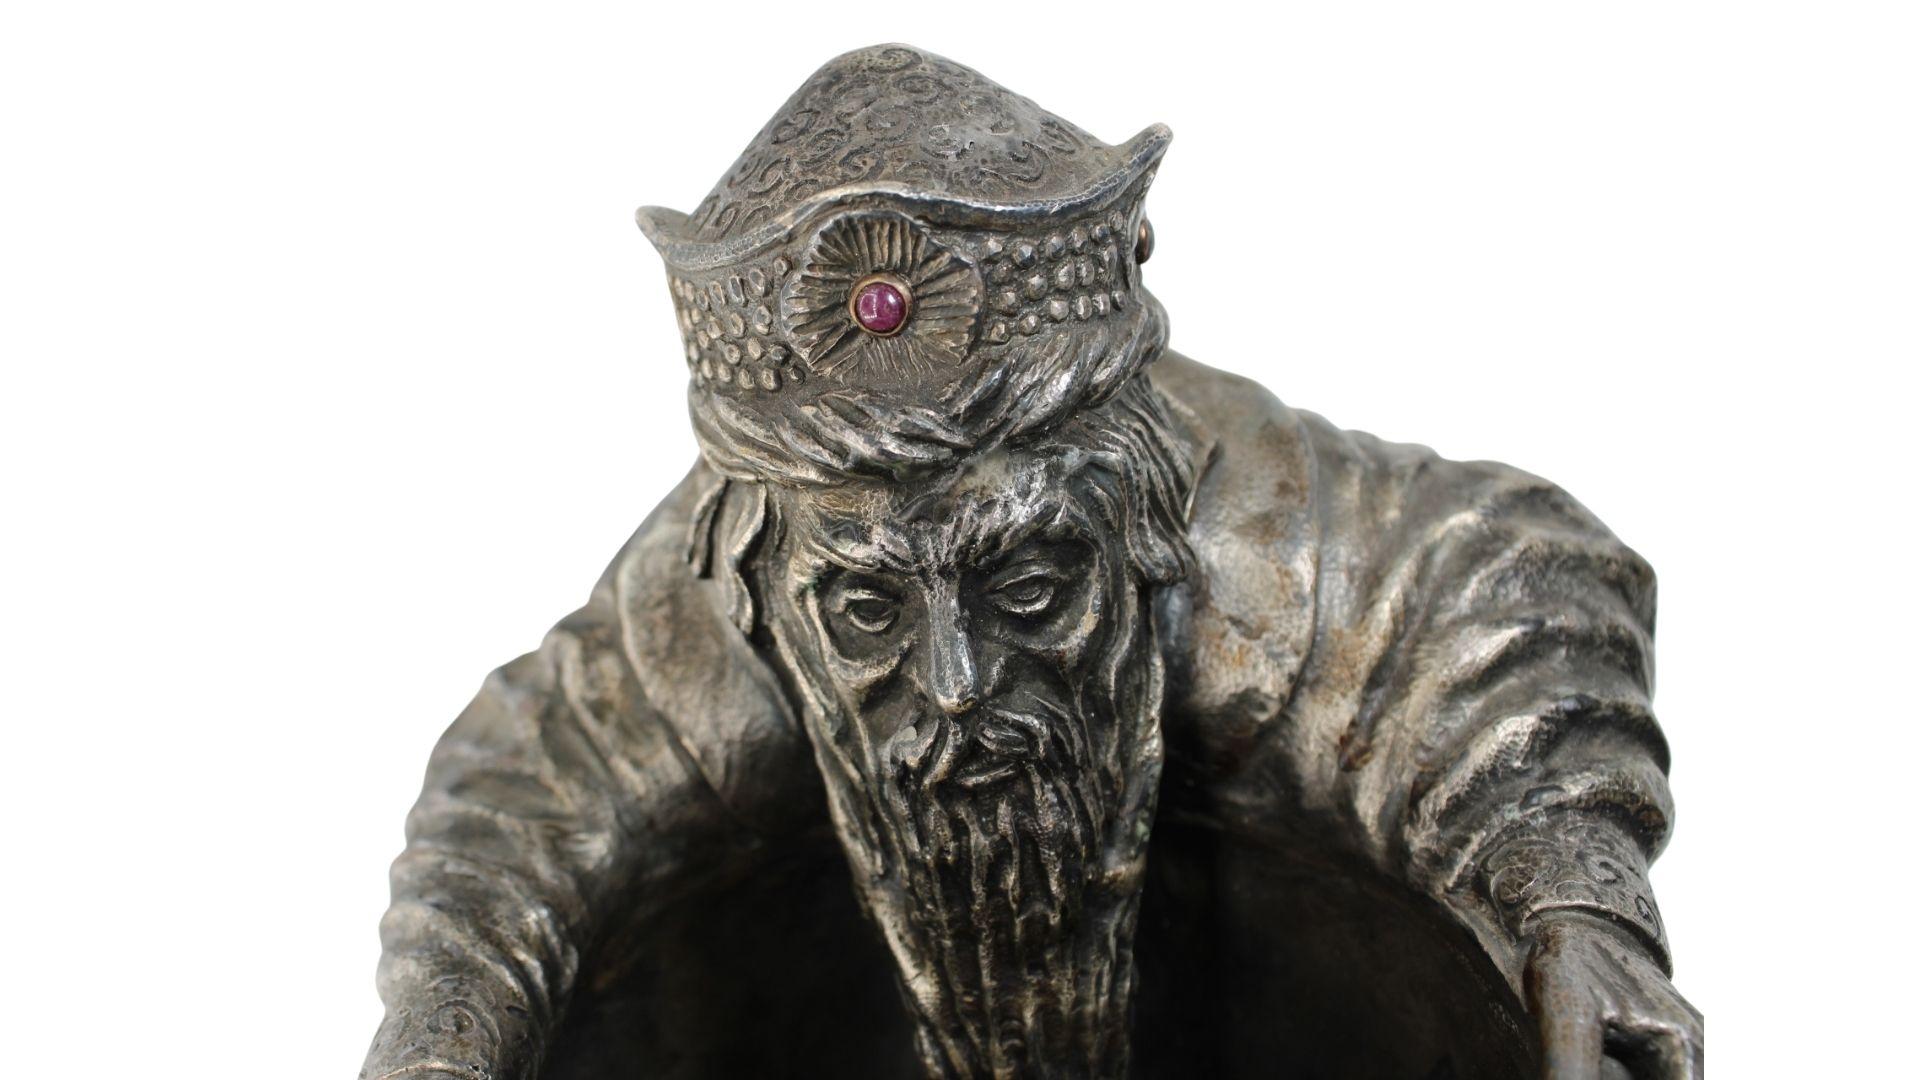 Dieses atemberaubende Stück von Pavel Ovchinnikov zeigt seine erstaunliche Arbeit in Silbergravur.
Dieses Stück stellt einen alten Mönch dar, der sitzt, während sein Bart in einen Kessel fällt.
Auf dem Kopf des Mönchs befindet sich ein Hut mit